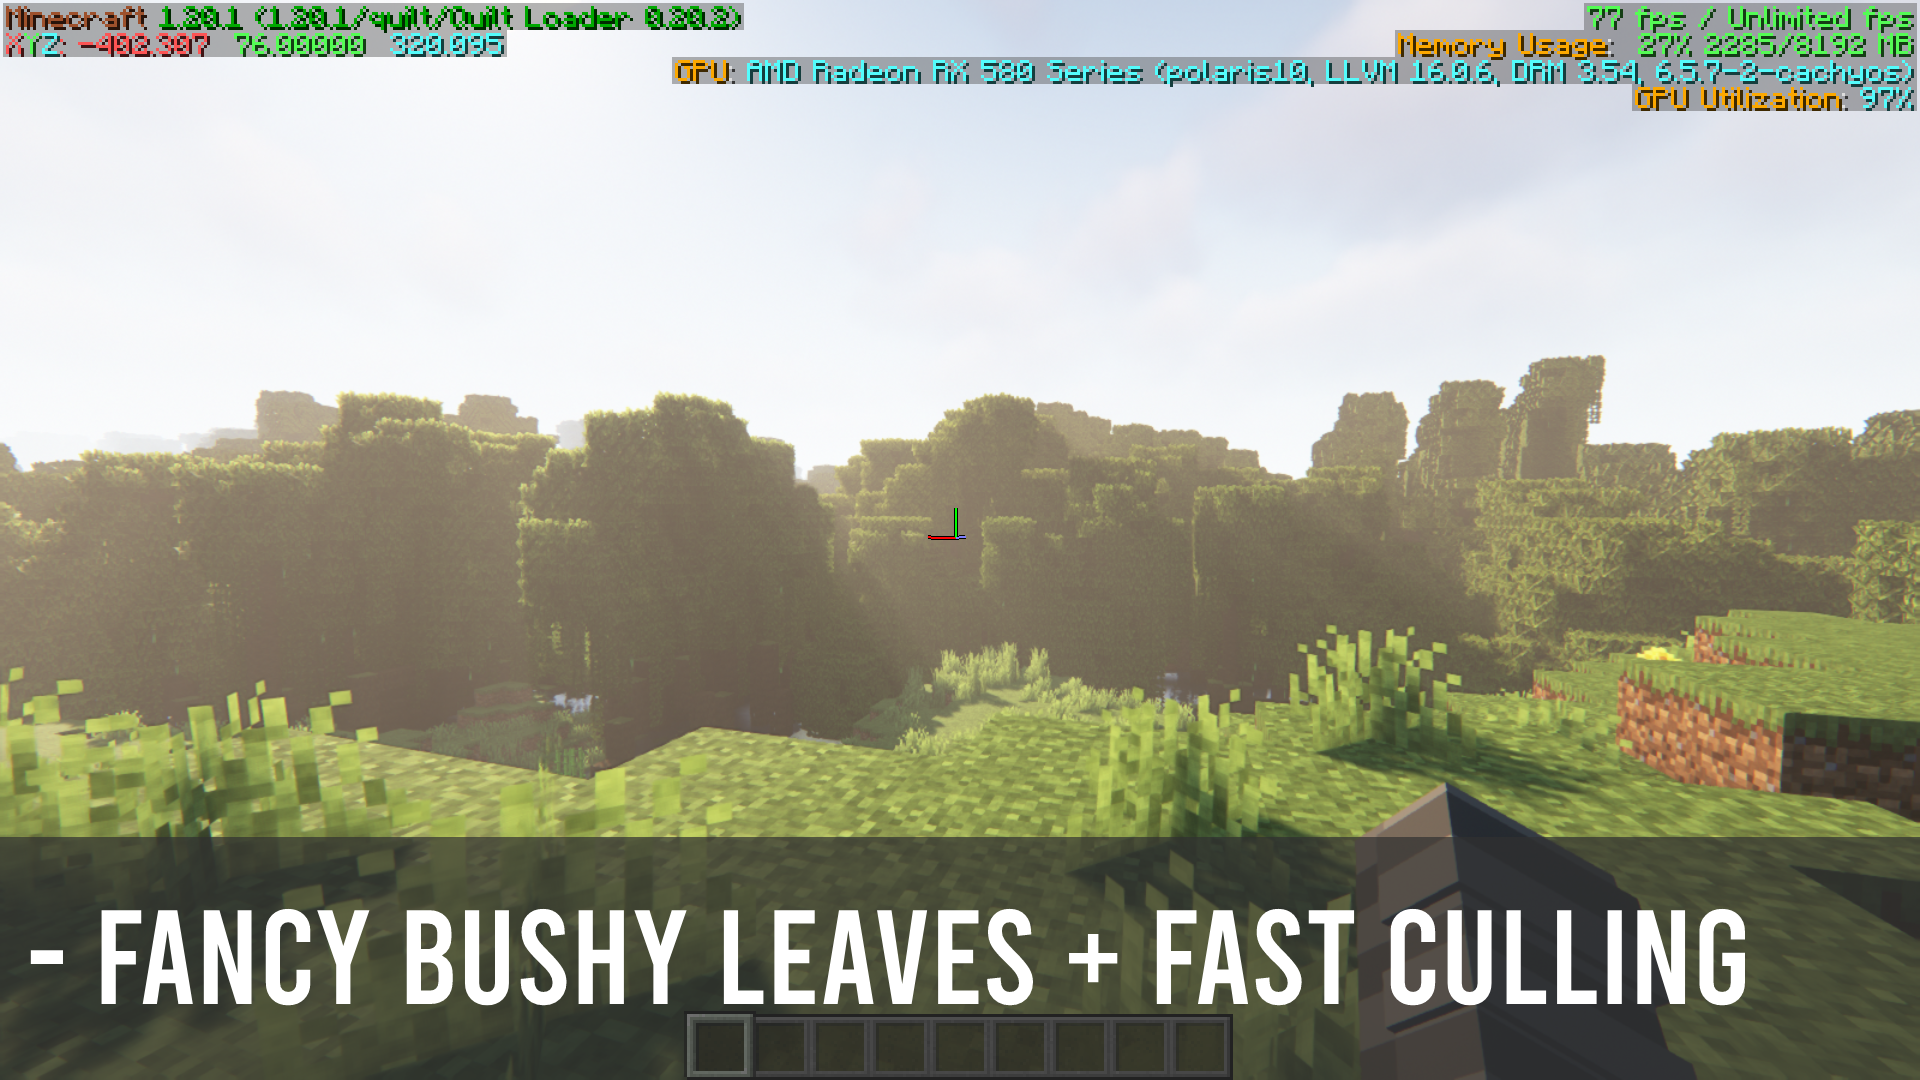 Fancy bushy leaves + Fast culling